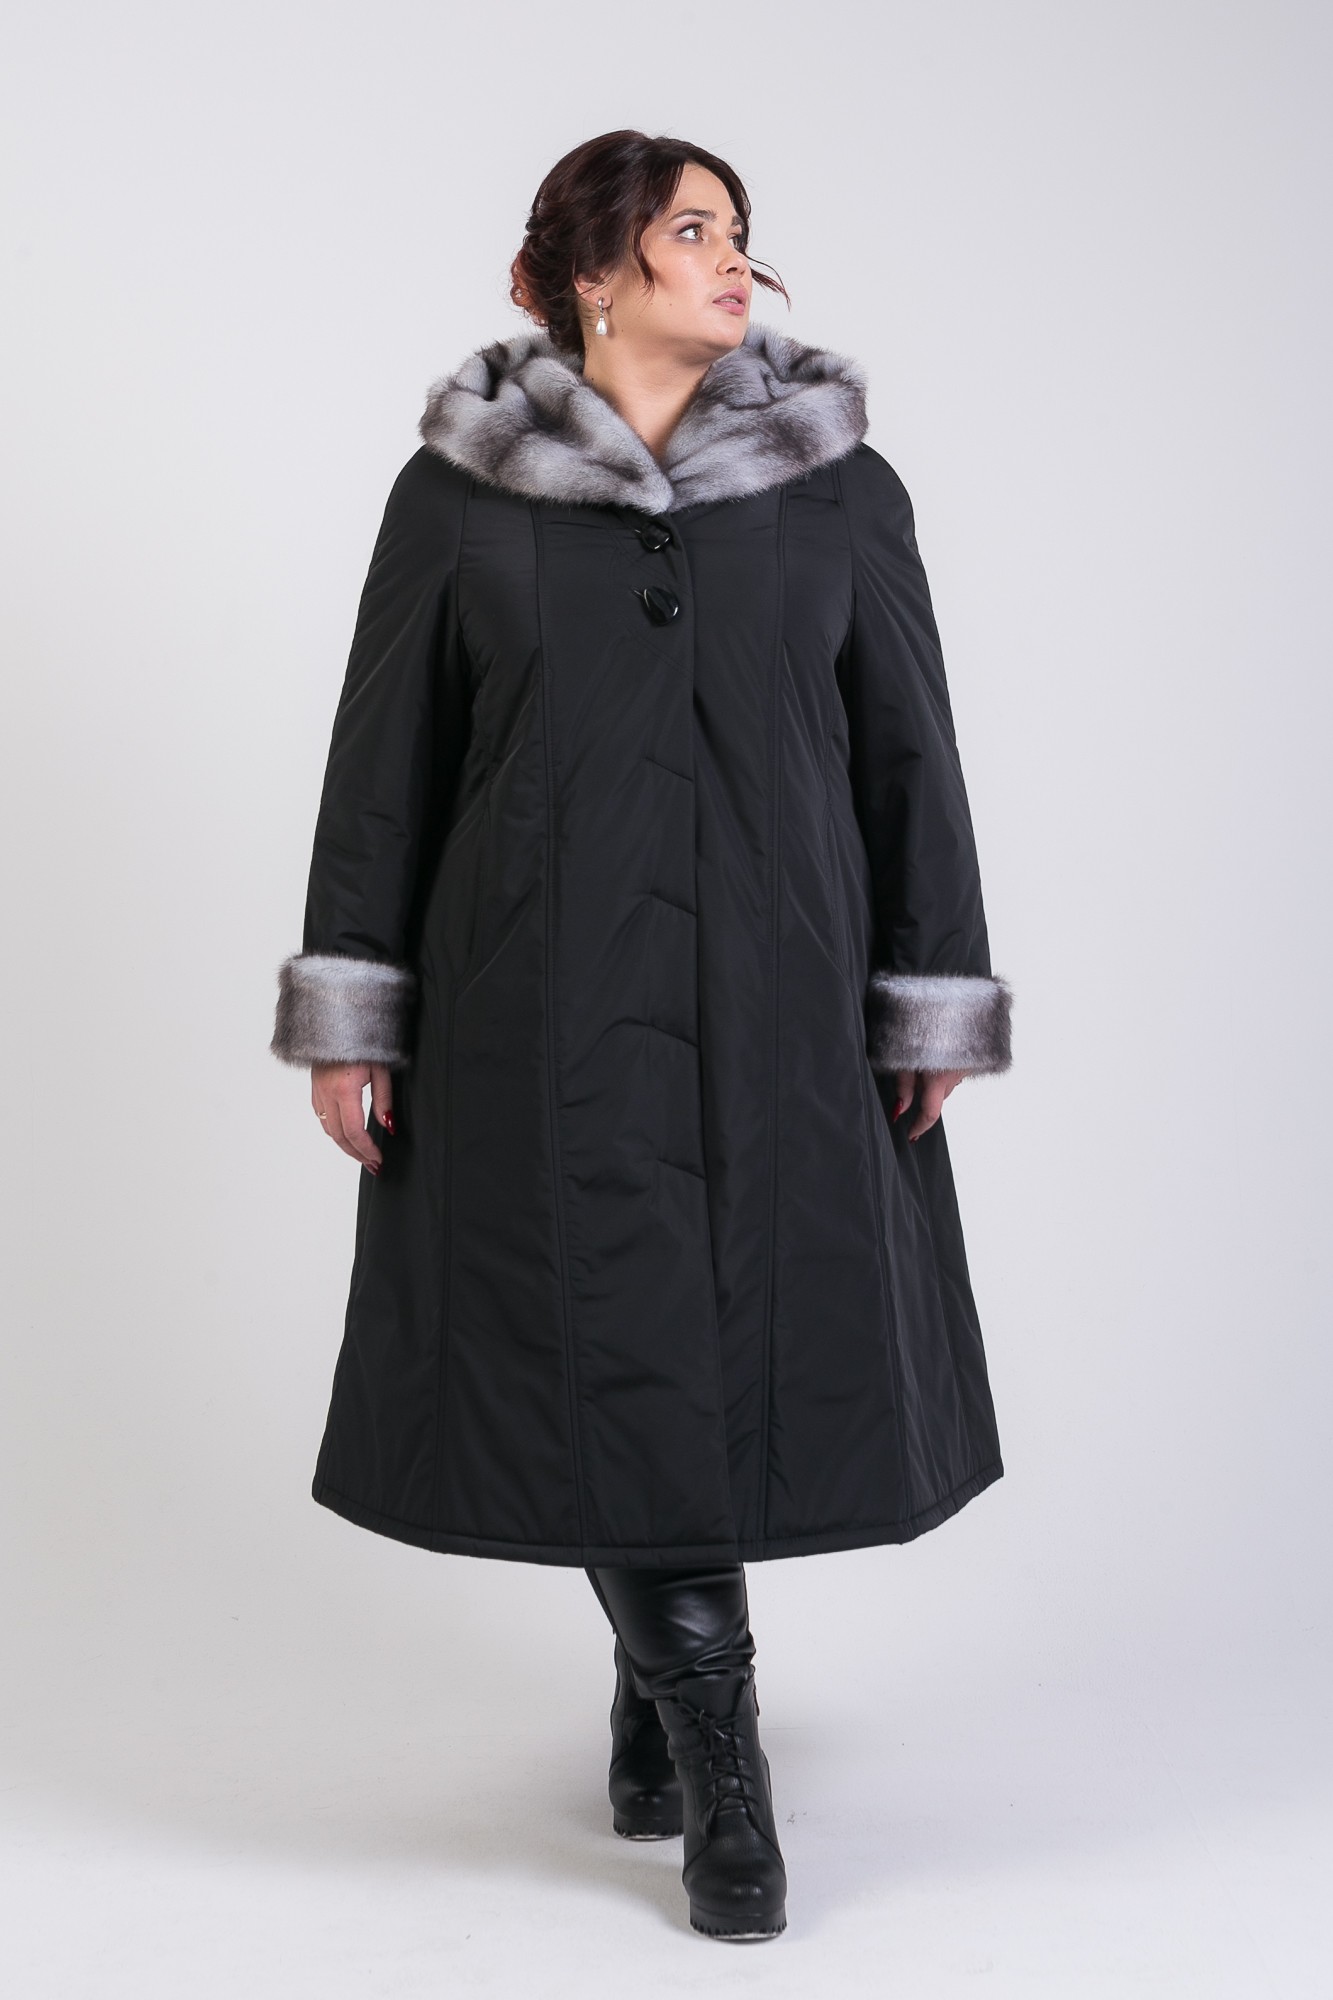 Пальто зимнее женское больших размеров